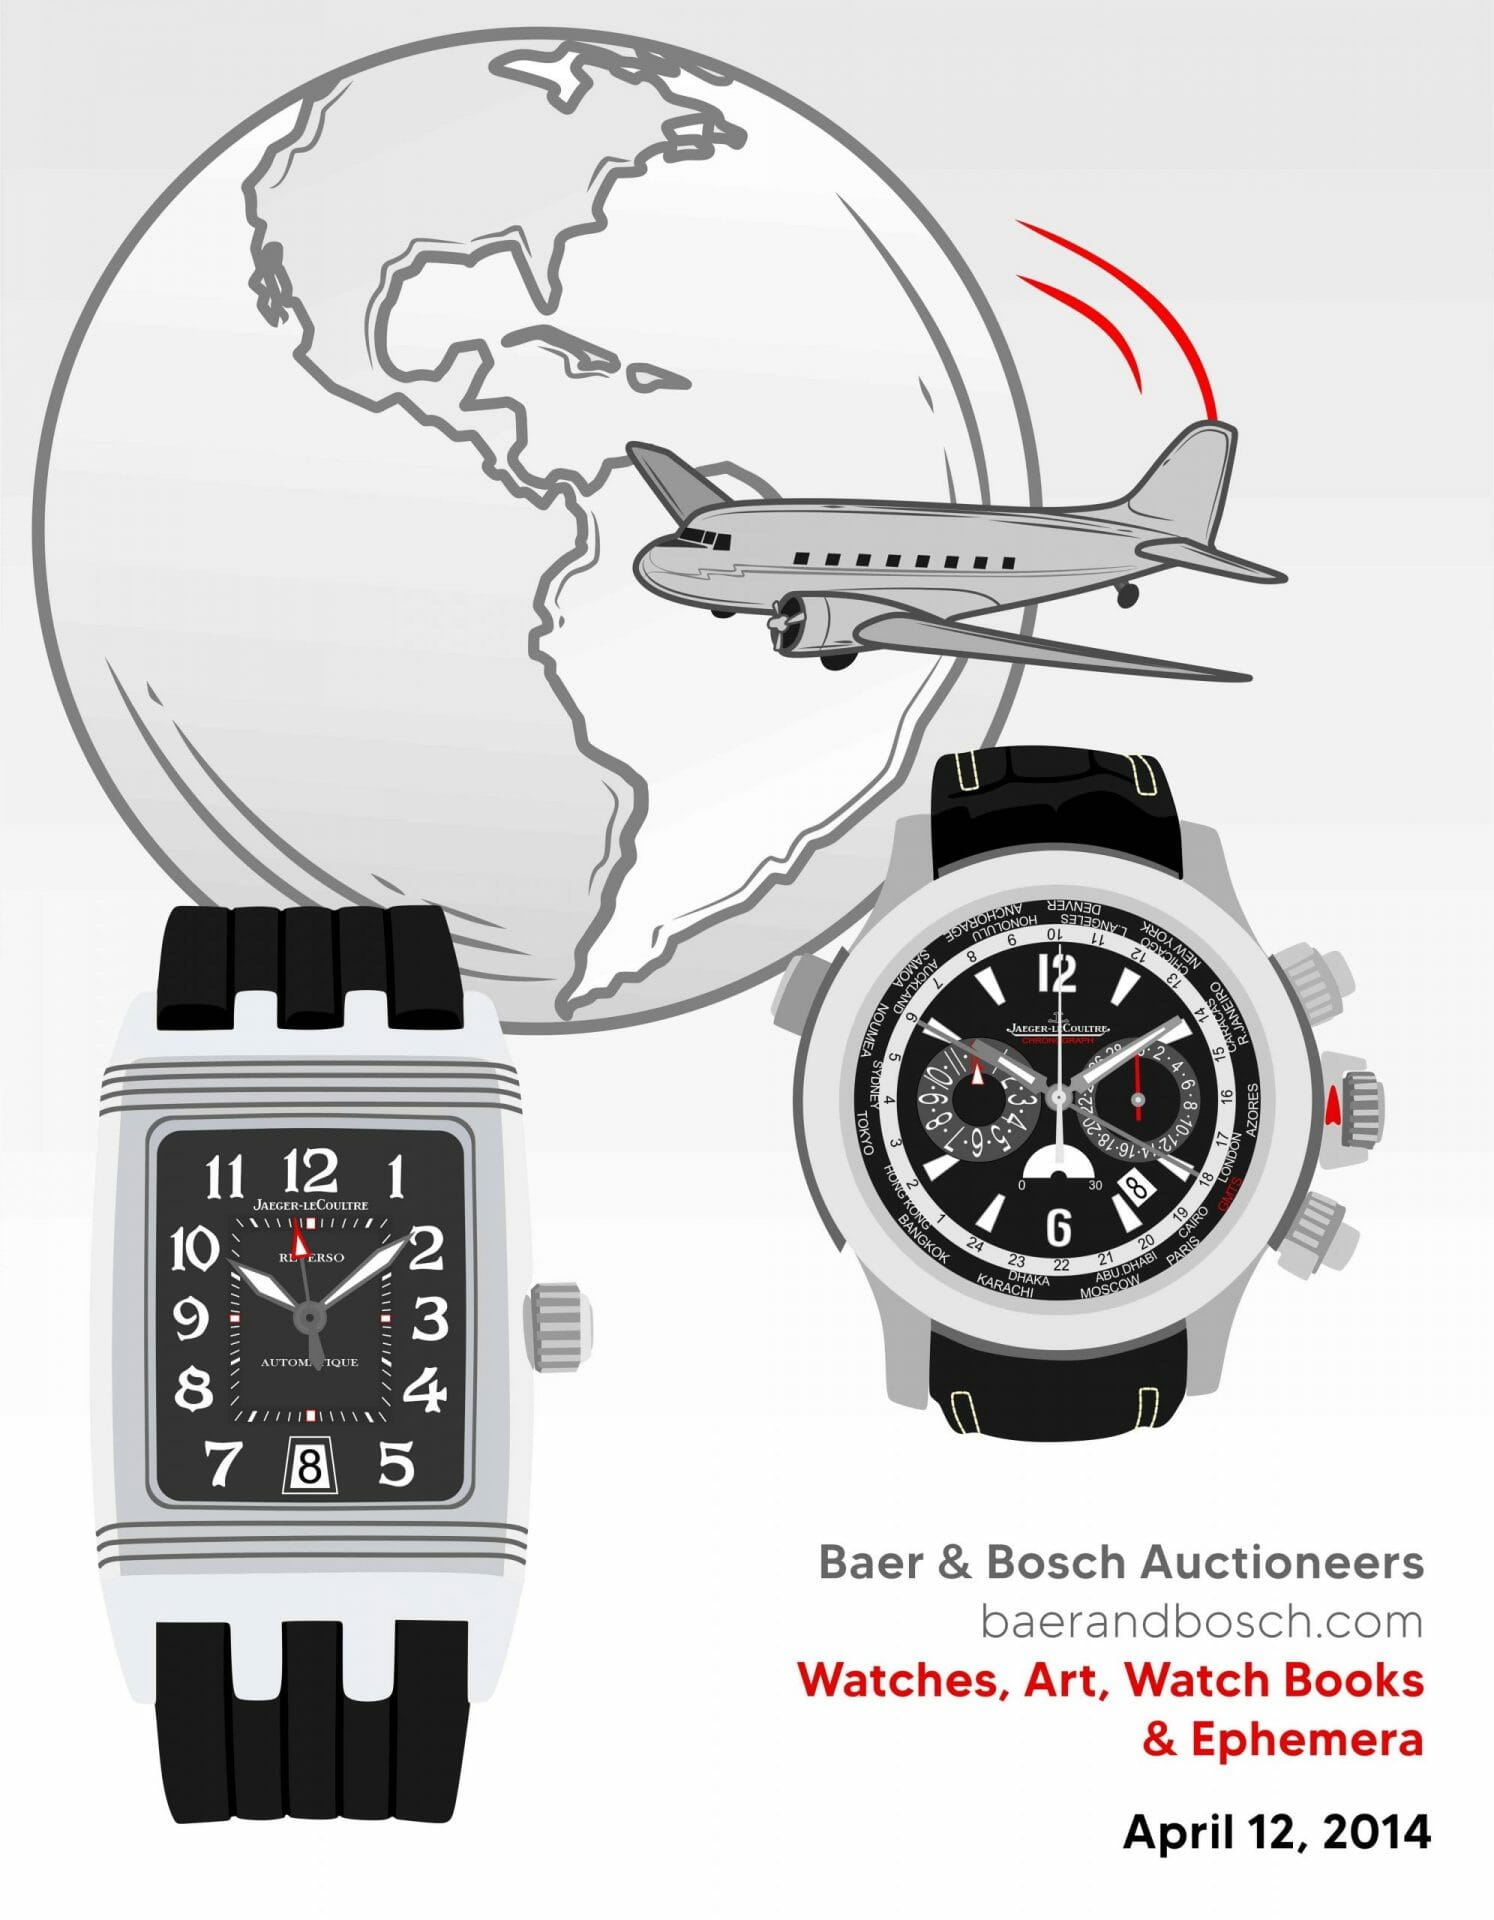 Watches, Art, Watch Books & Ephemera 04.12.14 Baer & Bosch Auctioneers